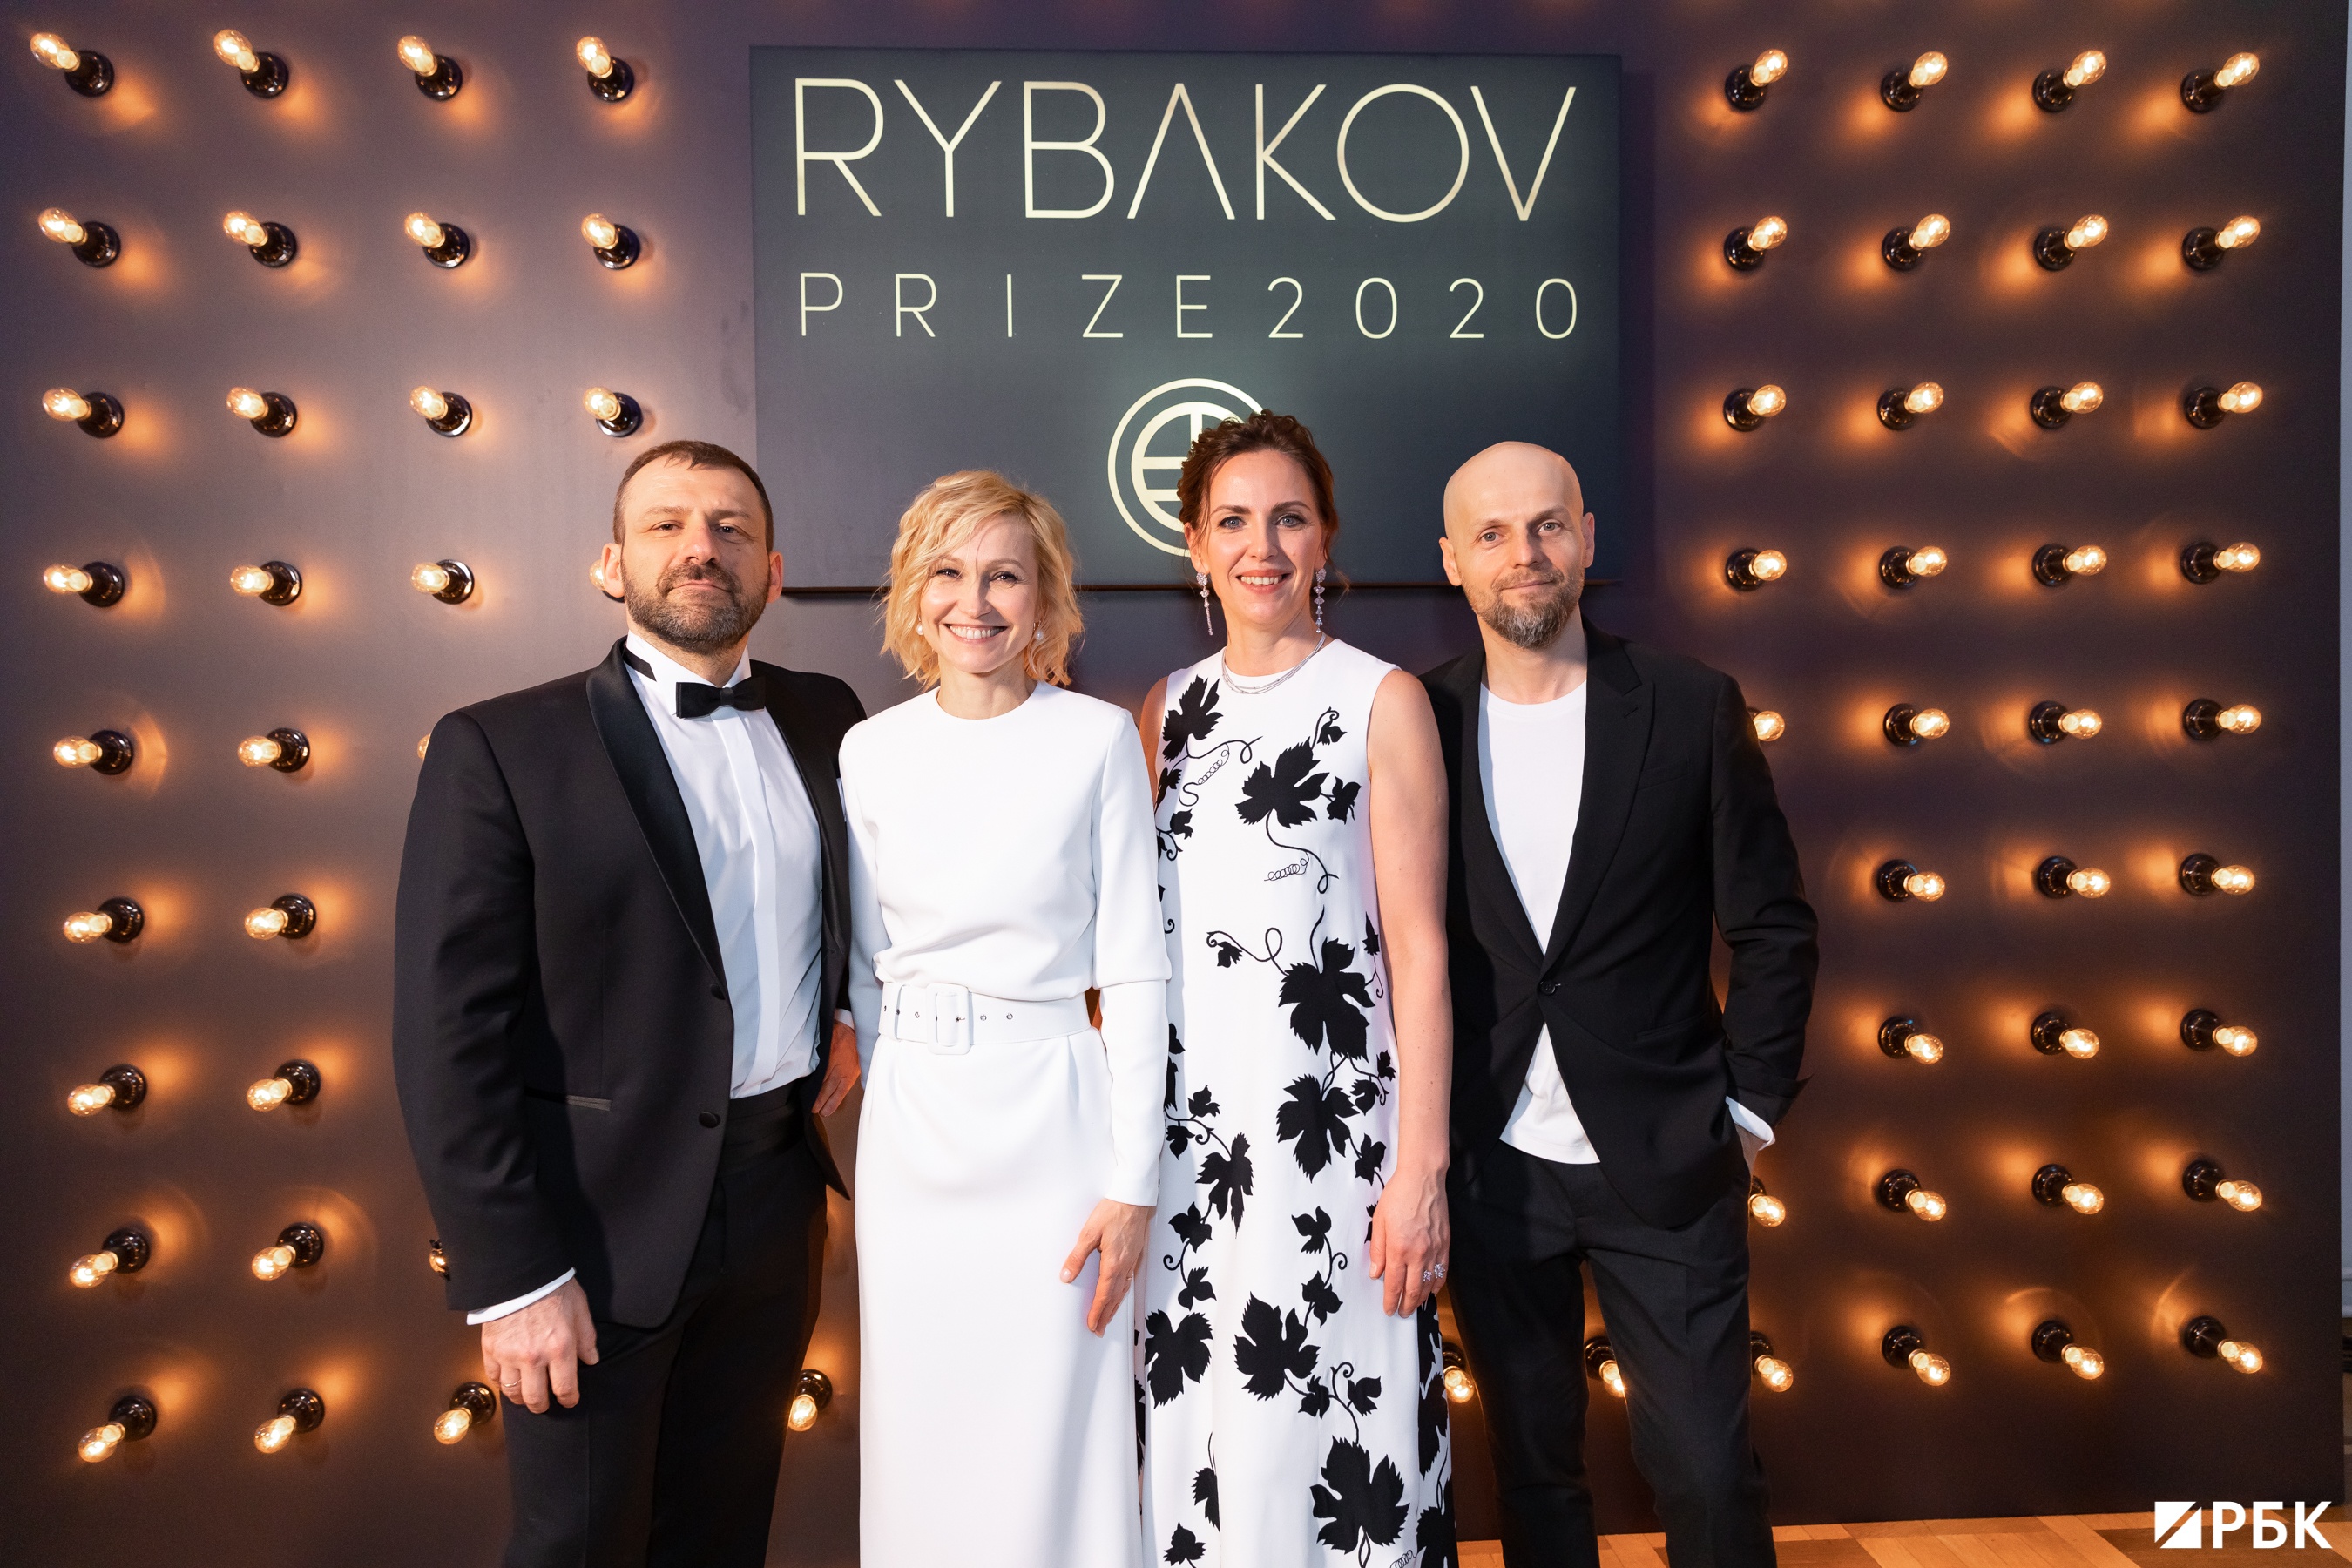 Rybakov Prize